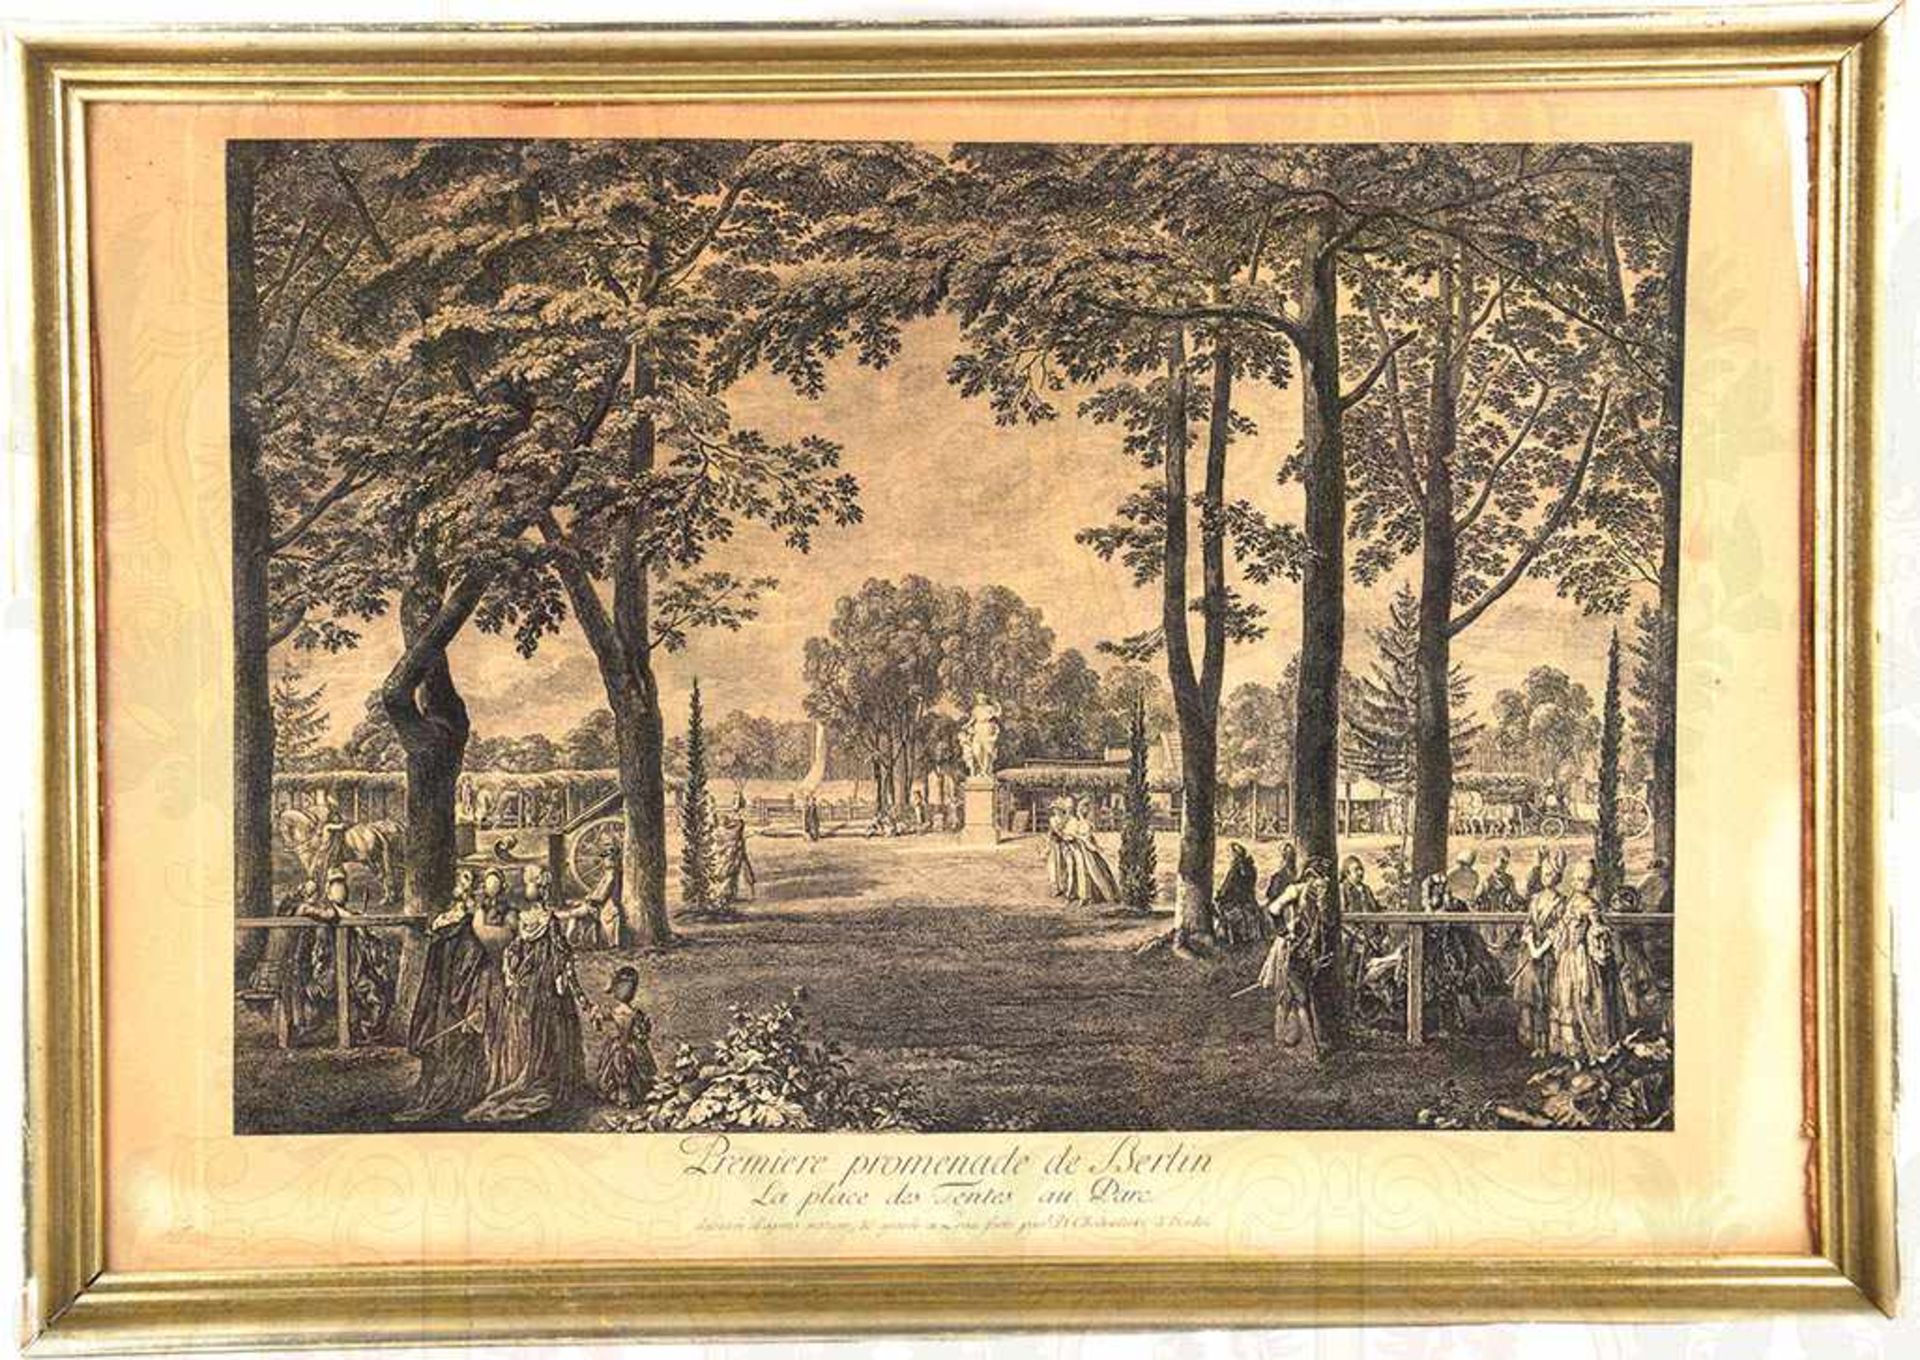 RADIERUNG „PREMIERE PROMENADE DE BERLIN“, „La place des Tentes au Parc“, Darstellung um 1772,